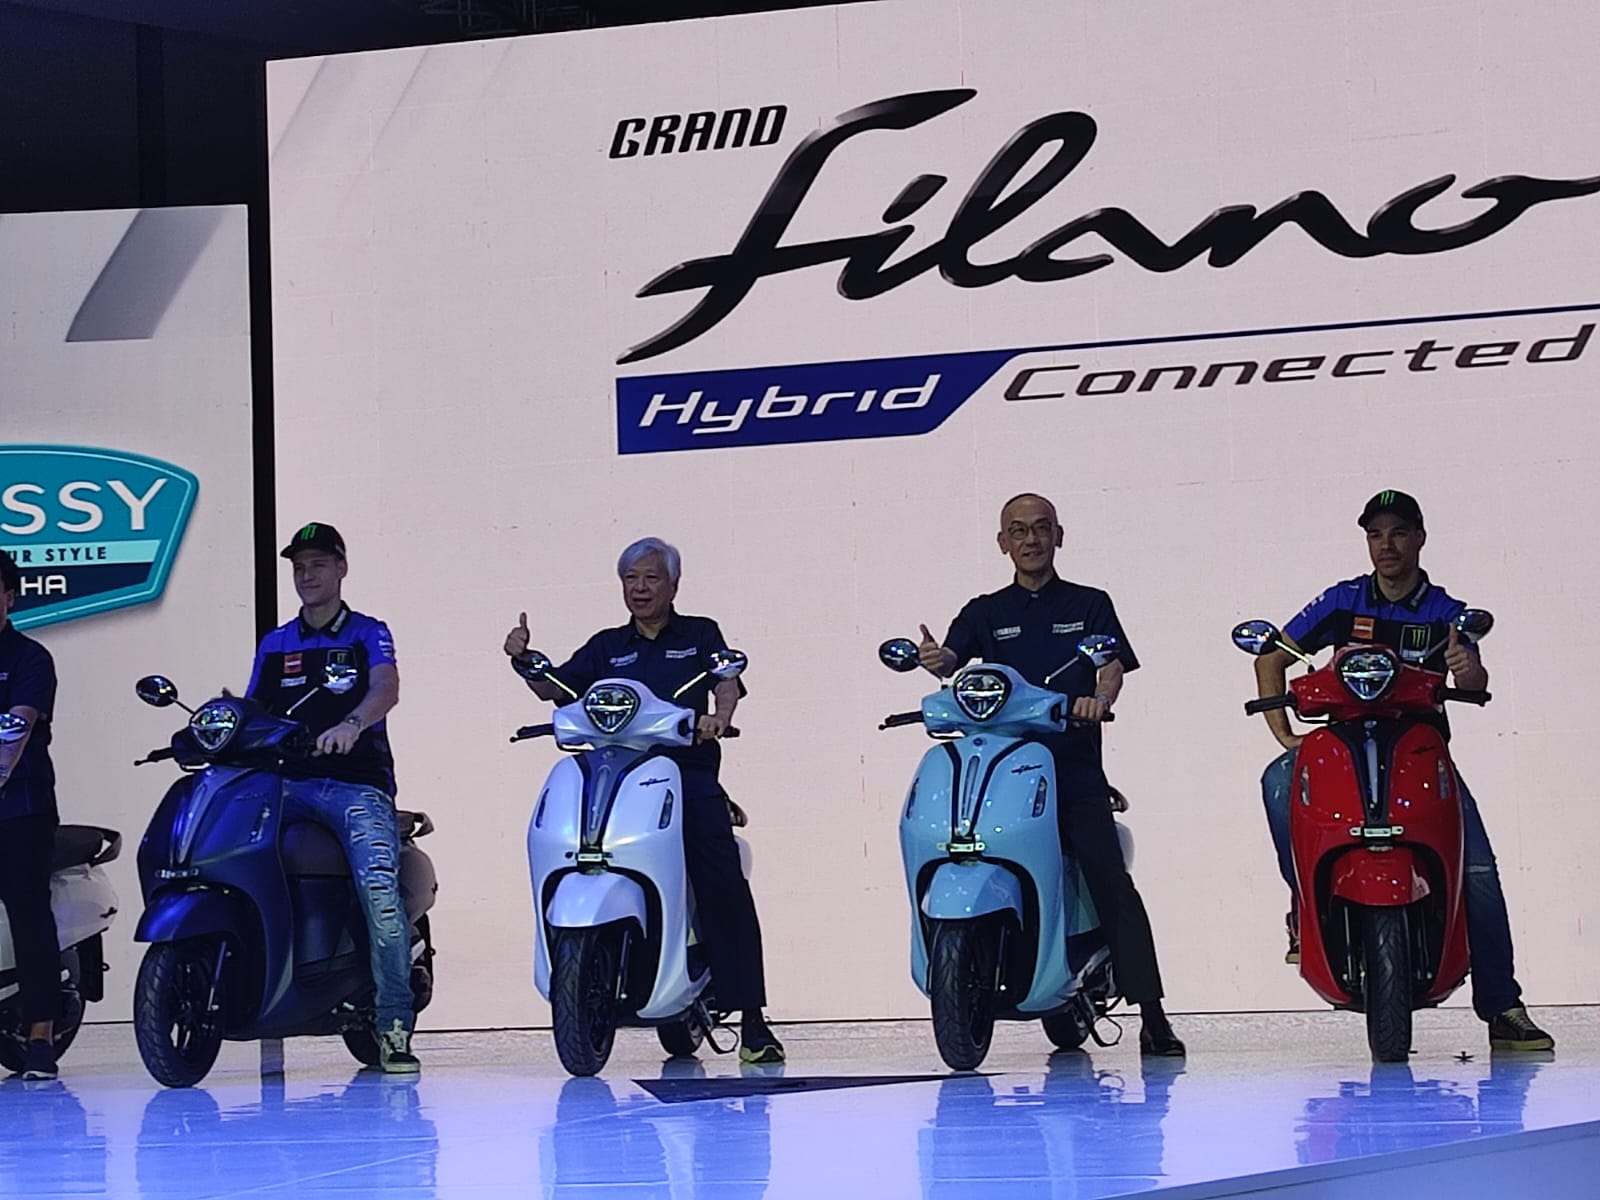 Yamaha Grand Filano Hybrid-Connected Hadir di Indonesia, Harga Mulai Rp27 Juta